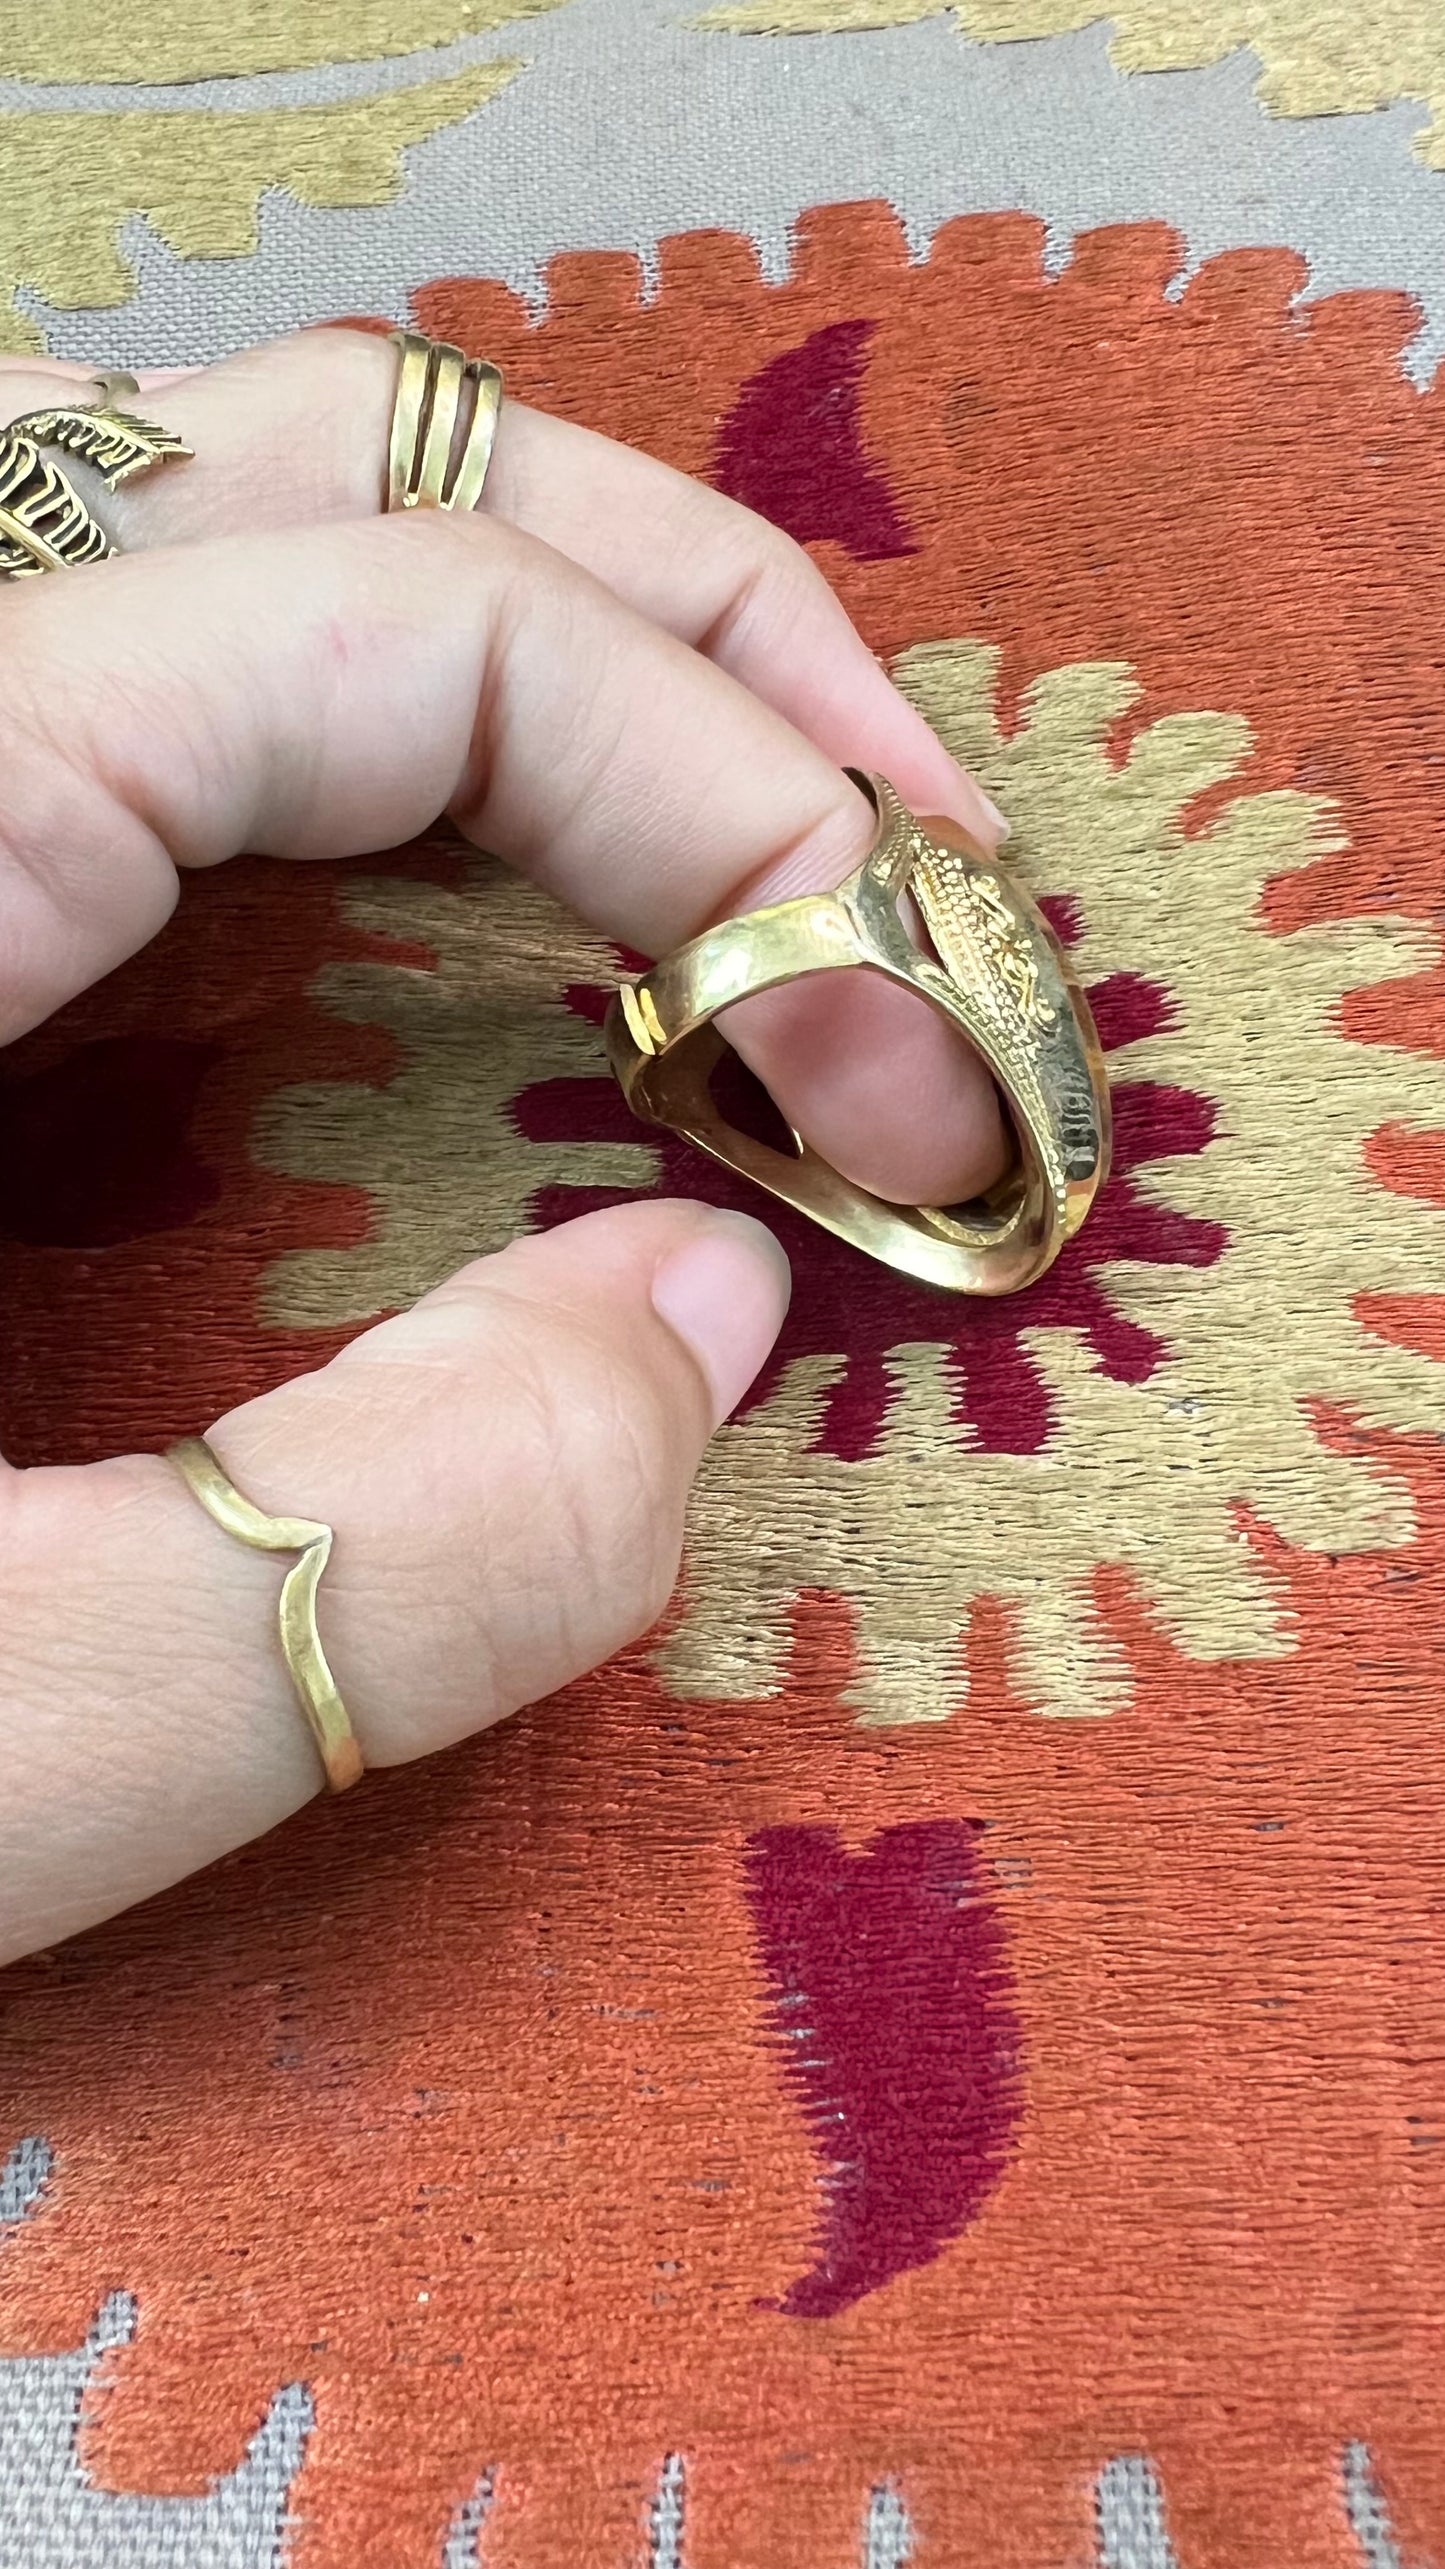 Stone Brass Ring